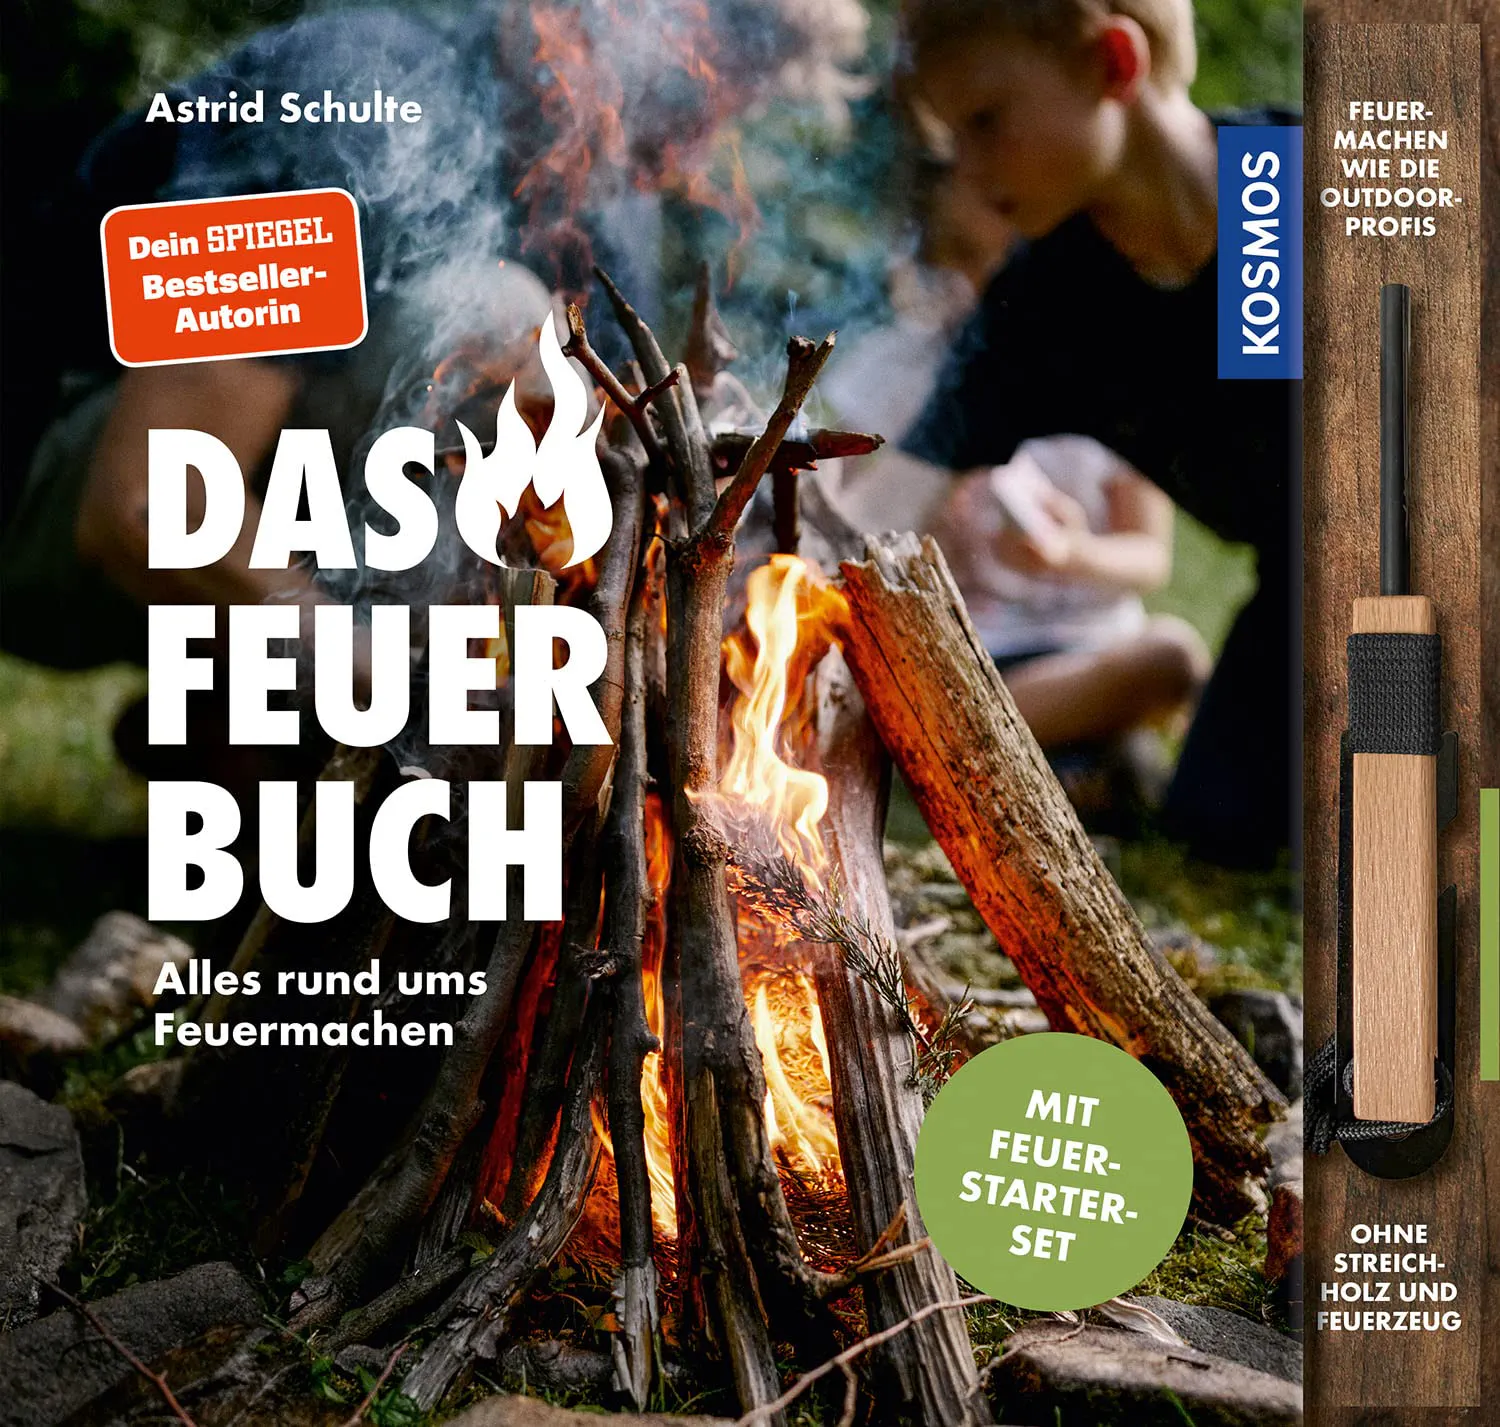 Cover von "Das Feuerbuch - Alles rund ums Feuermachen" von Astrid Schulte, erschienen im Kosmos Verlag.